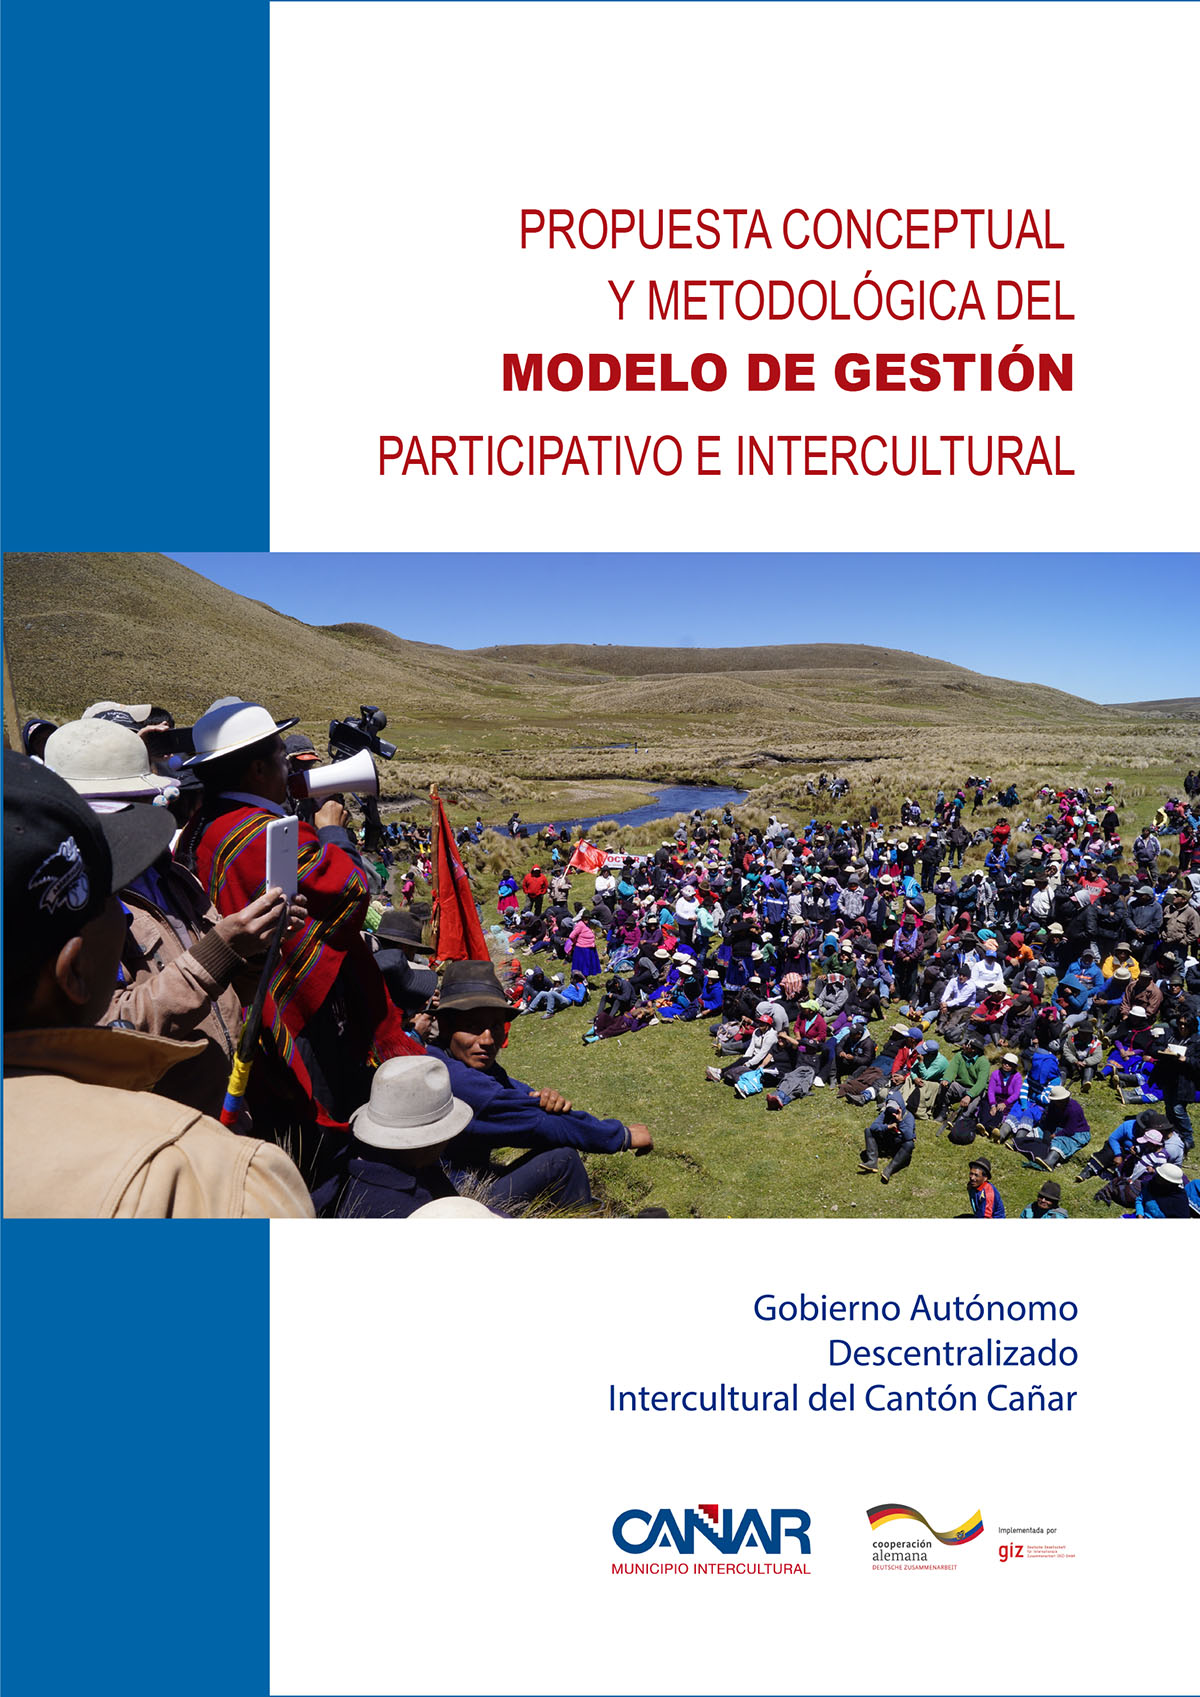 Propuesta conceptual y metodológica del modelo de gestión participativo e intercultural<br/>Quito: Gesellschaft für Internationale Zusammenarbeit (GIZ). 2017. 85 páginas 